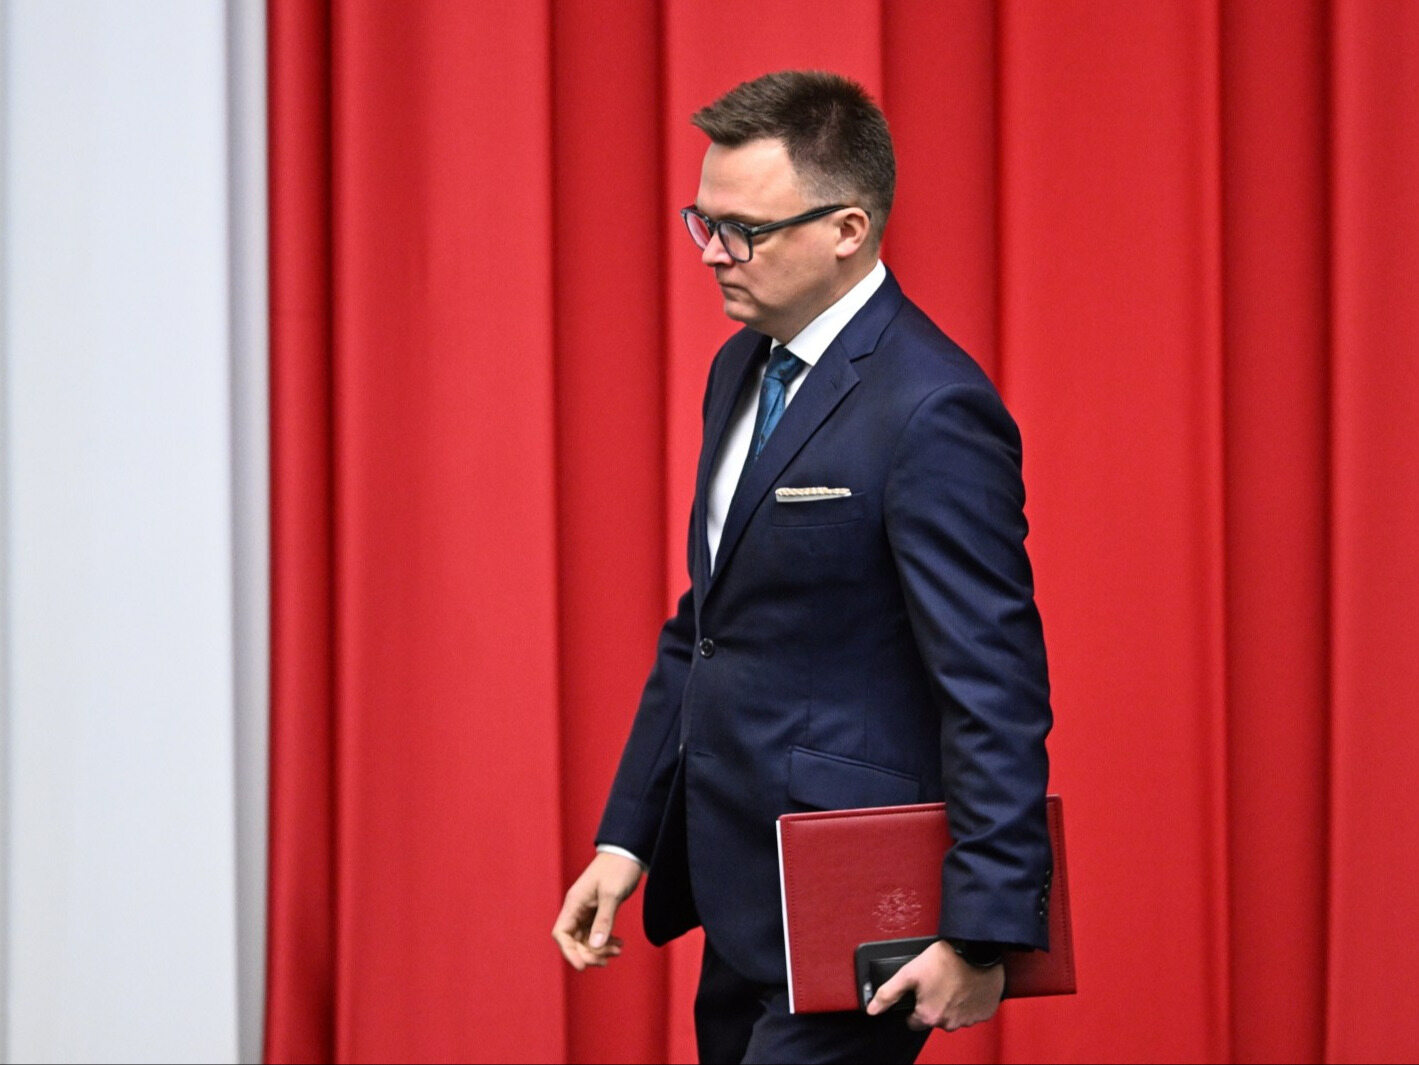 Szymon Hołownia chce małej rewolucji w Sejmie. Ogłosił to podczas obrad